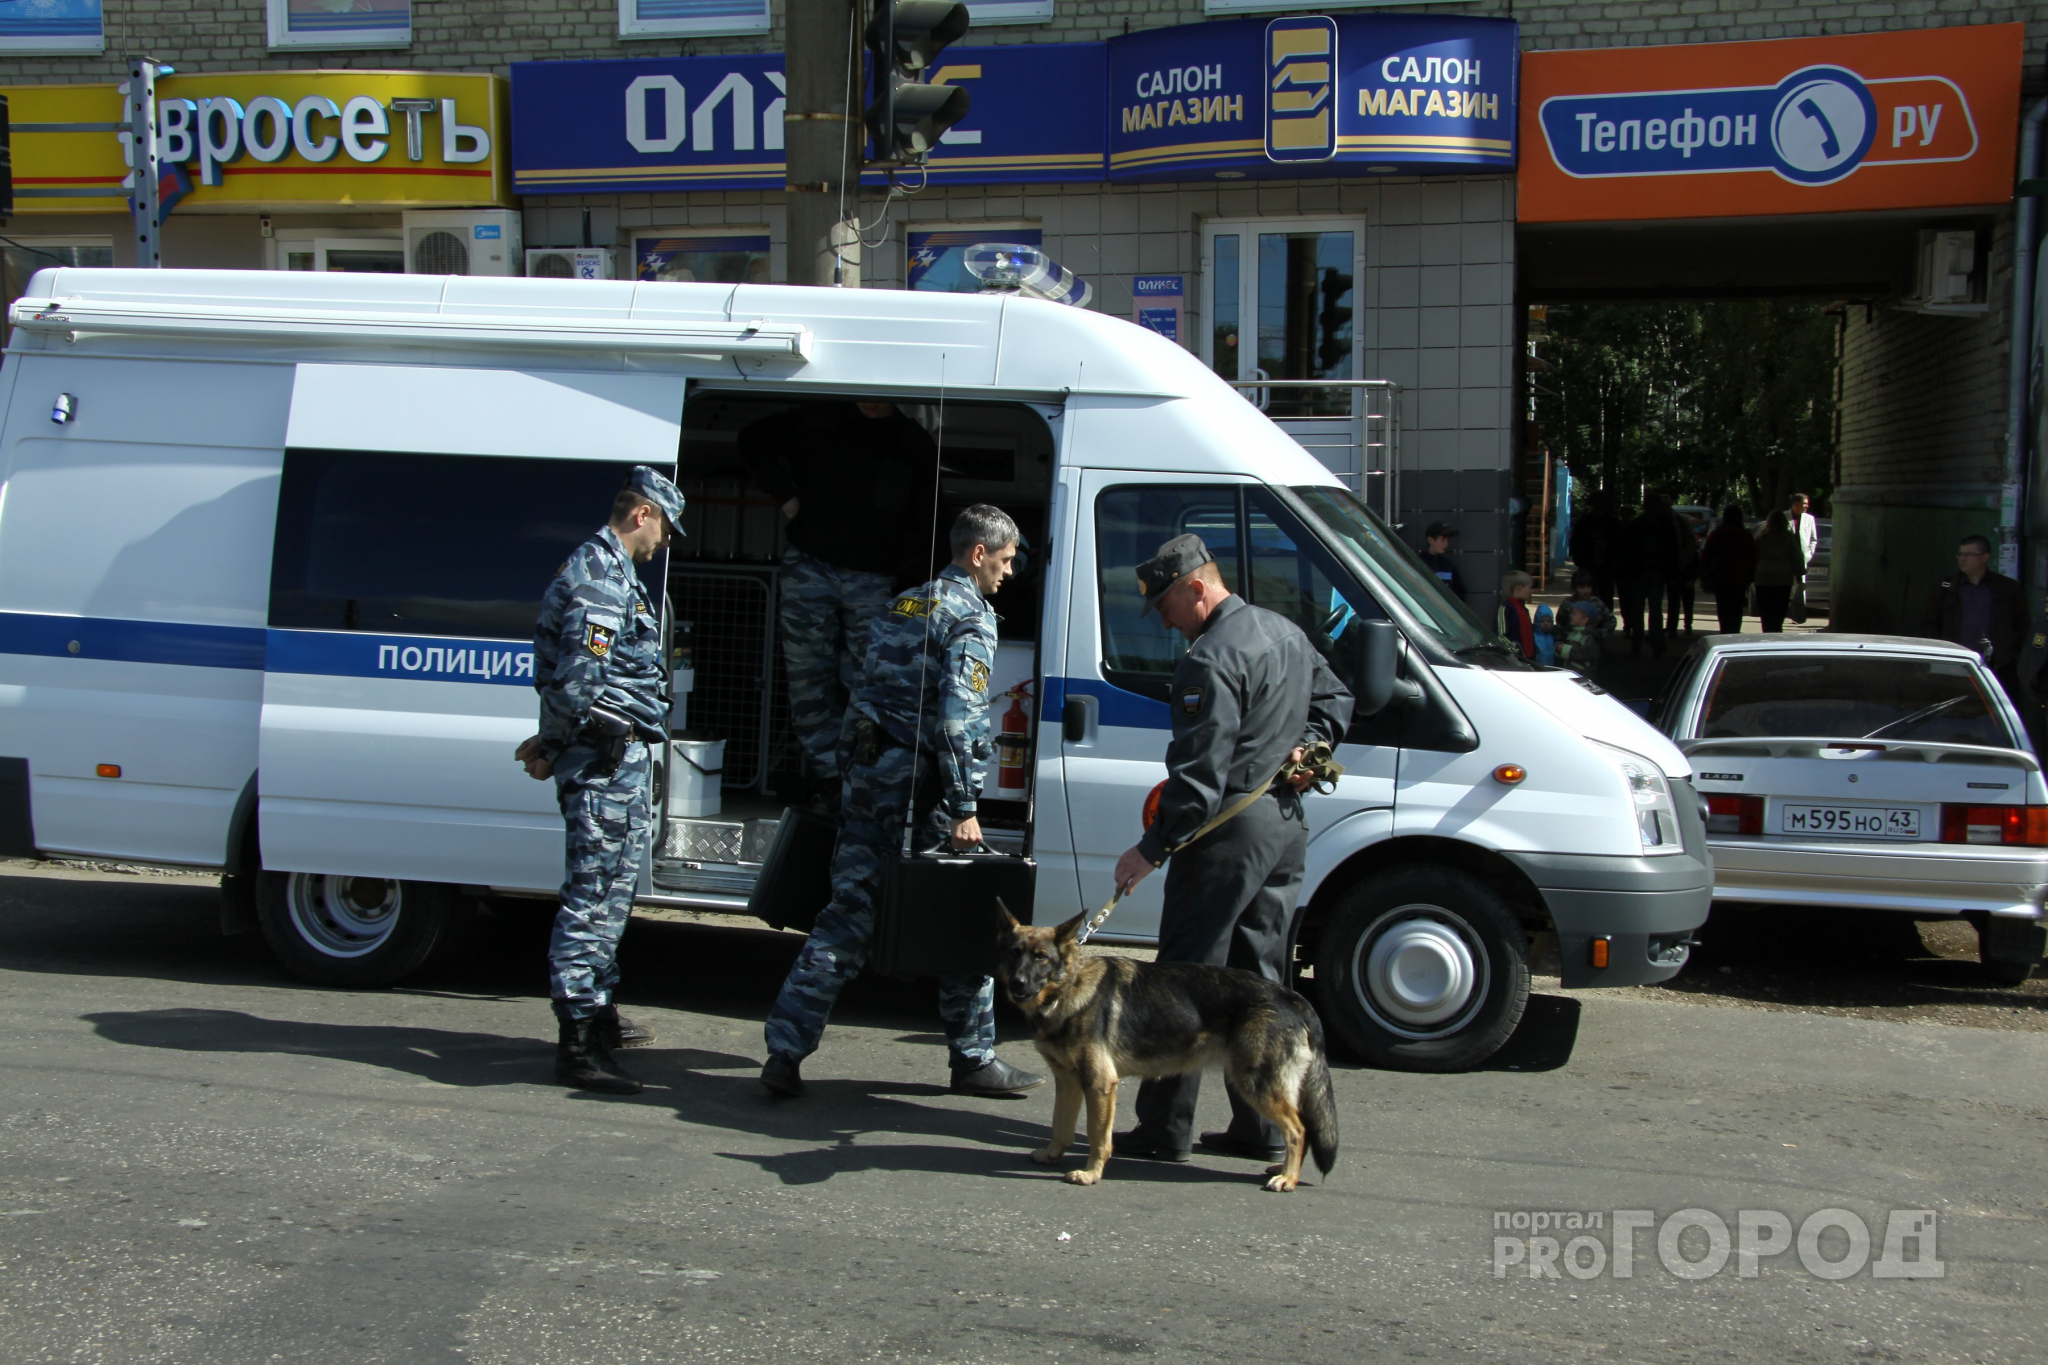 СМИ: "ТРЦ "Барс" и три рязанских больницы проверяют из-за угрозы взрывов